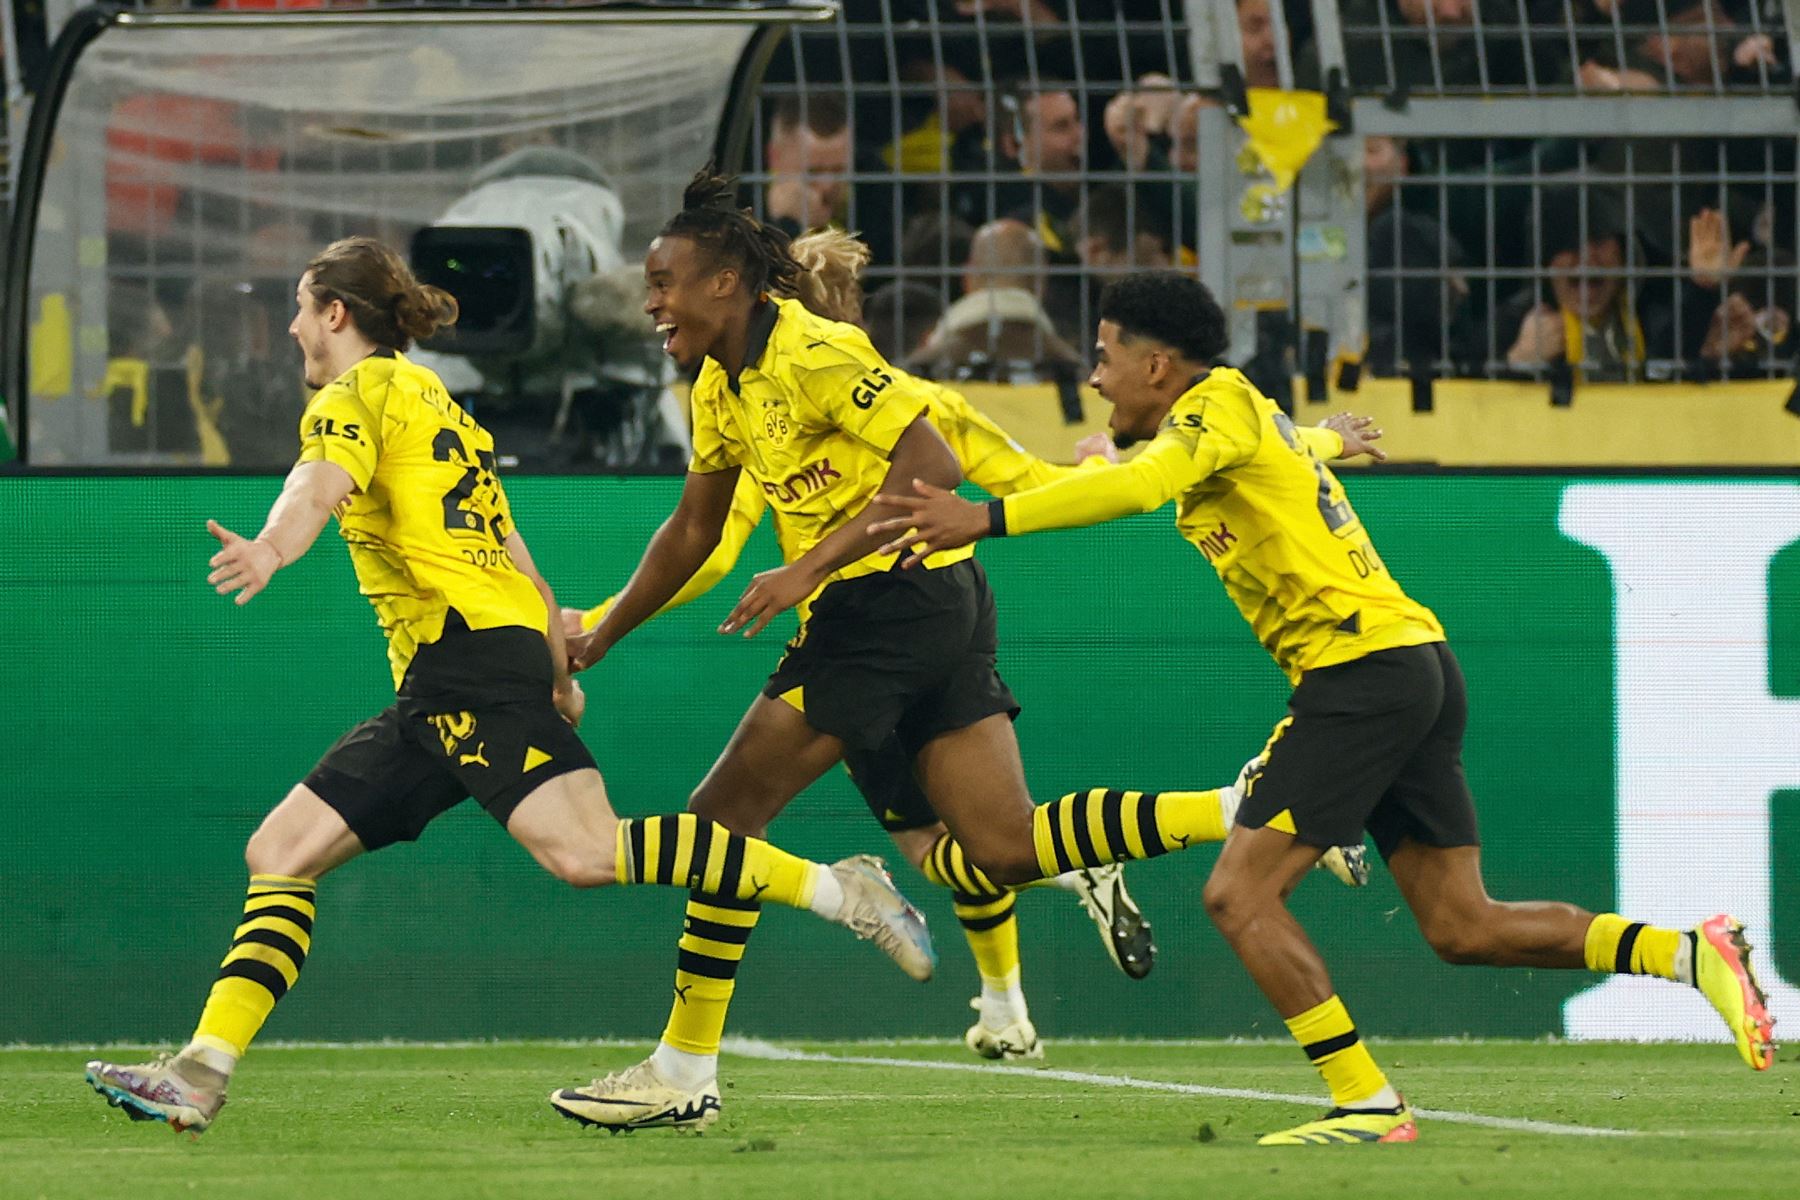 El centrocampista austriaco de Dortmund Marcel Sabitzer celebra marcar el gol 4-2 con sus compañeros de equipo durante el partido de fútbol de vuelta de los cuartos de final de la Liga de Campeones de la UEFA entre el Borussia Dortmund y el Atlético de Madrid en Dortmund.Foto: AFP